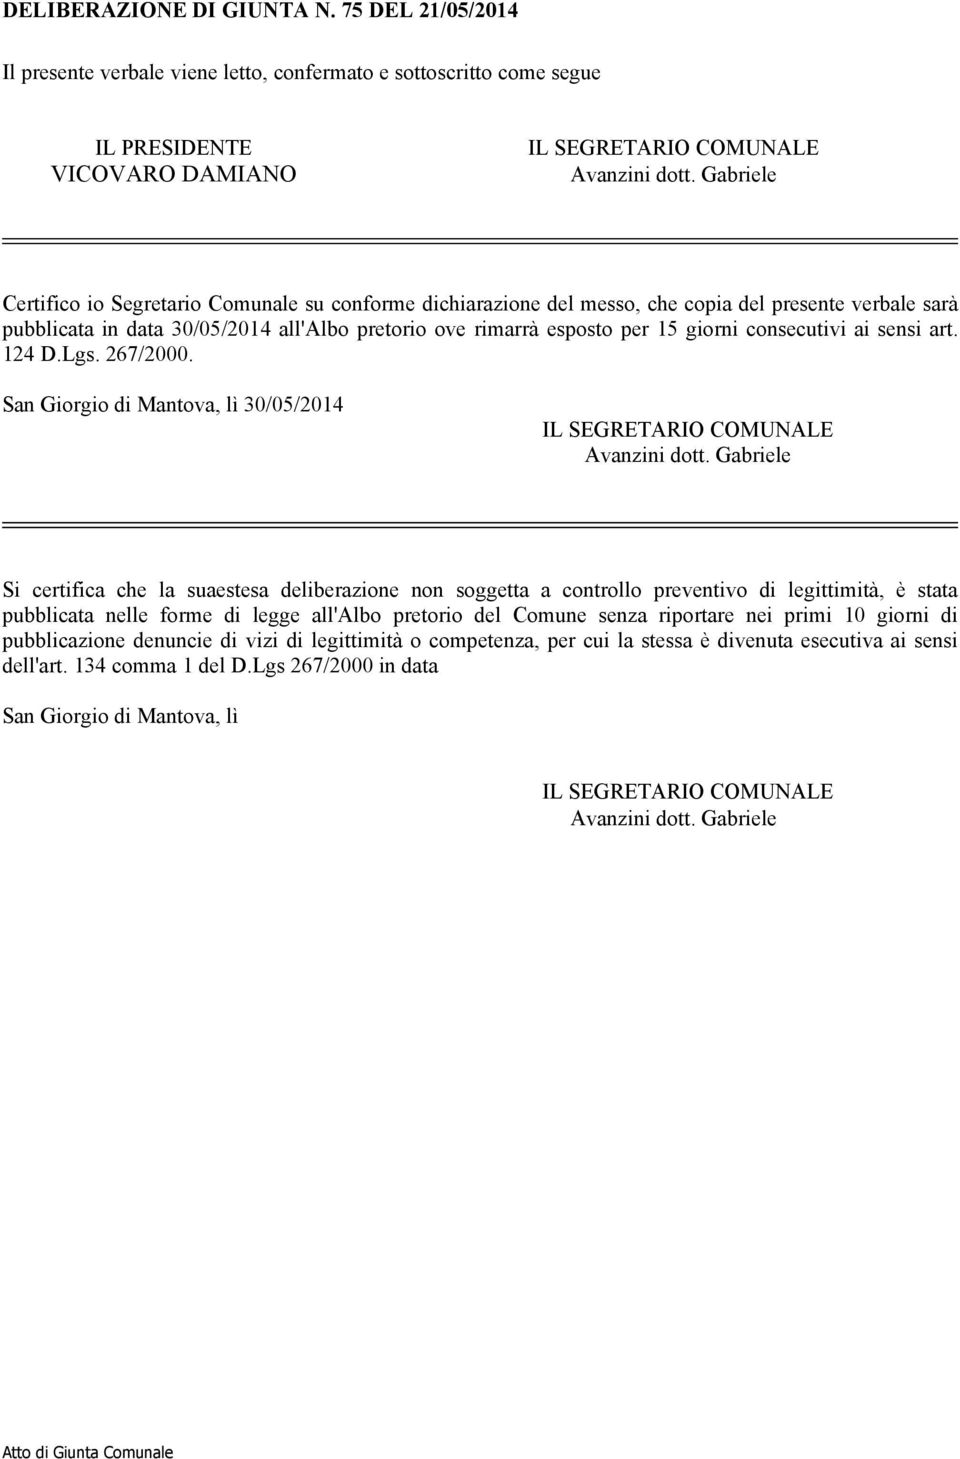 consecutivi ai sensi art. 124 D.Lgs. 267/2000. San Giorgio di Mantova, lì 30/05/2014 IL SEGRETARIO COMUNALE Avanzini dott.